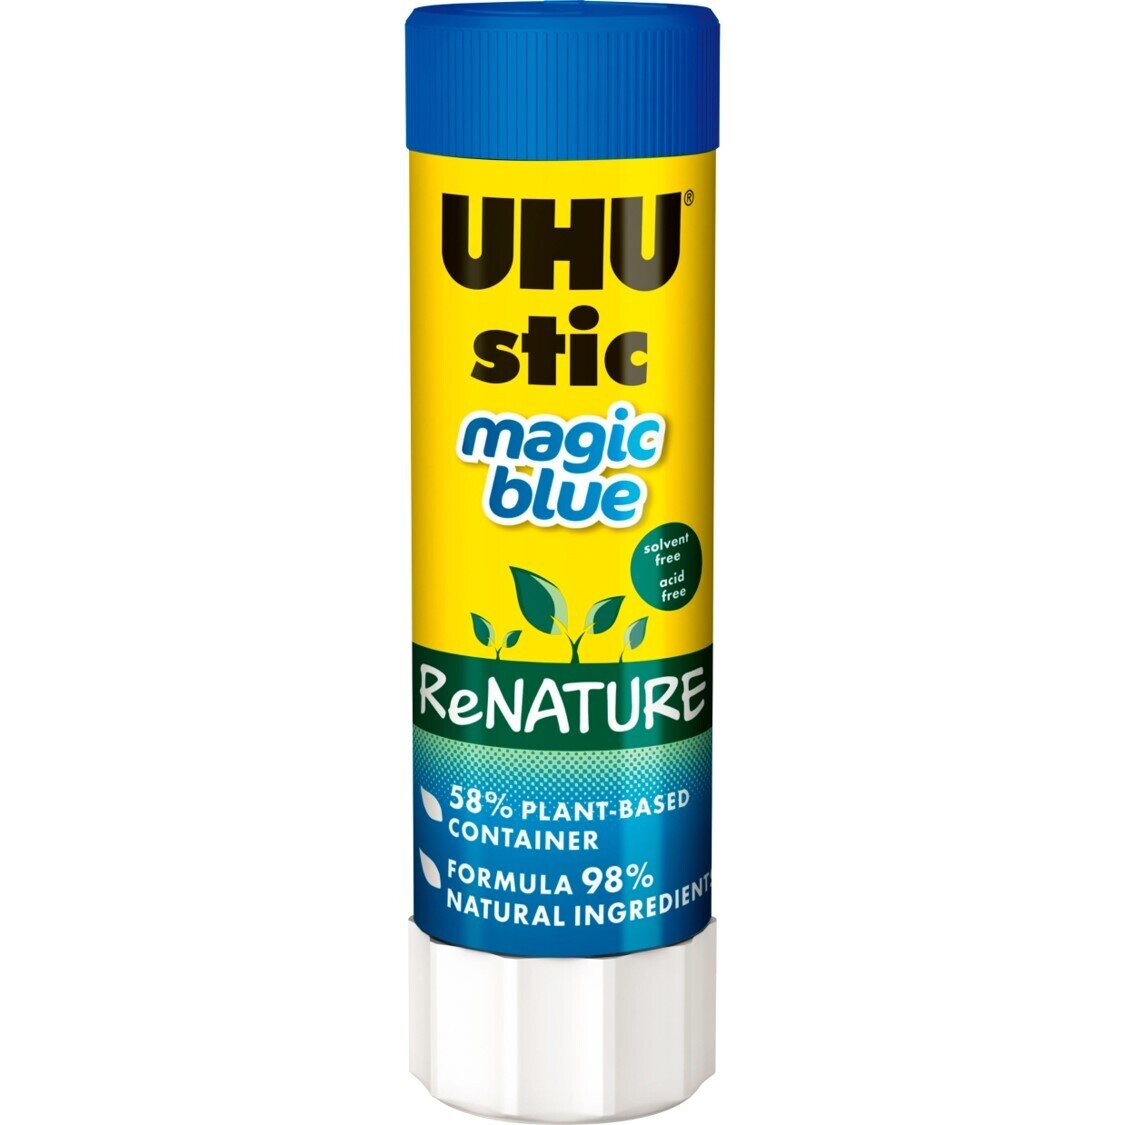 GLUE STIC UHU 40G RENATURE BLUE